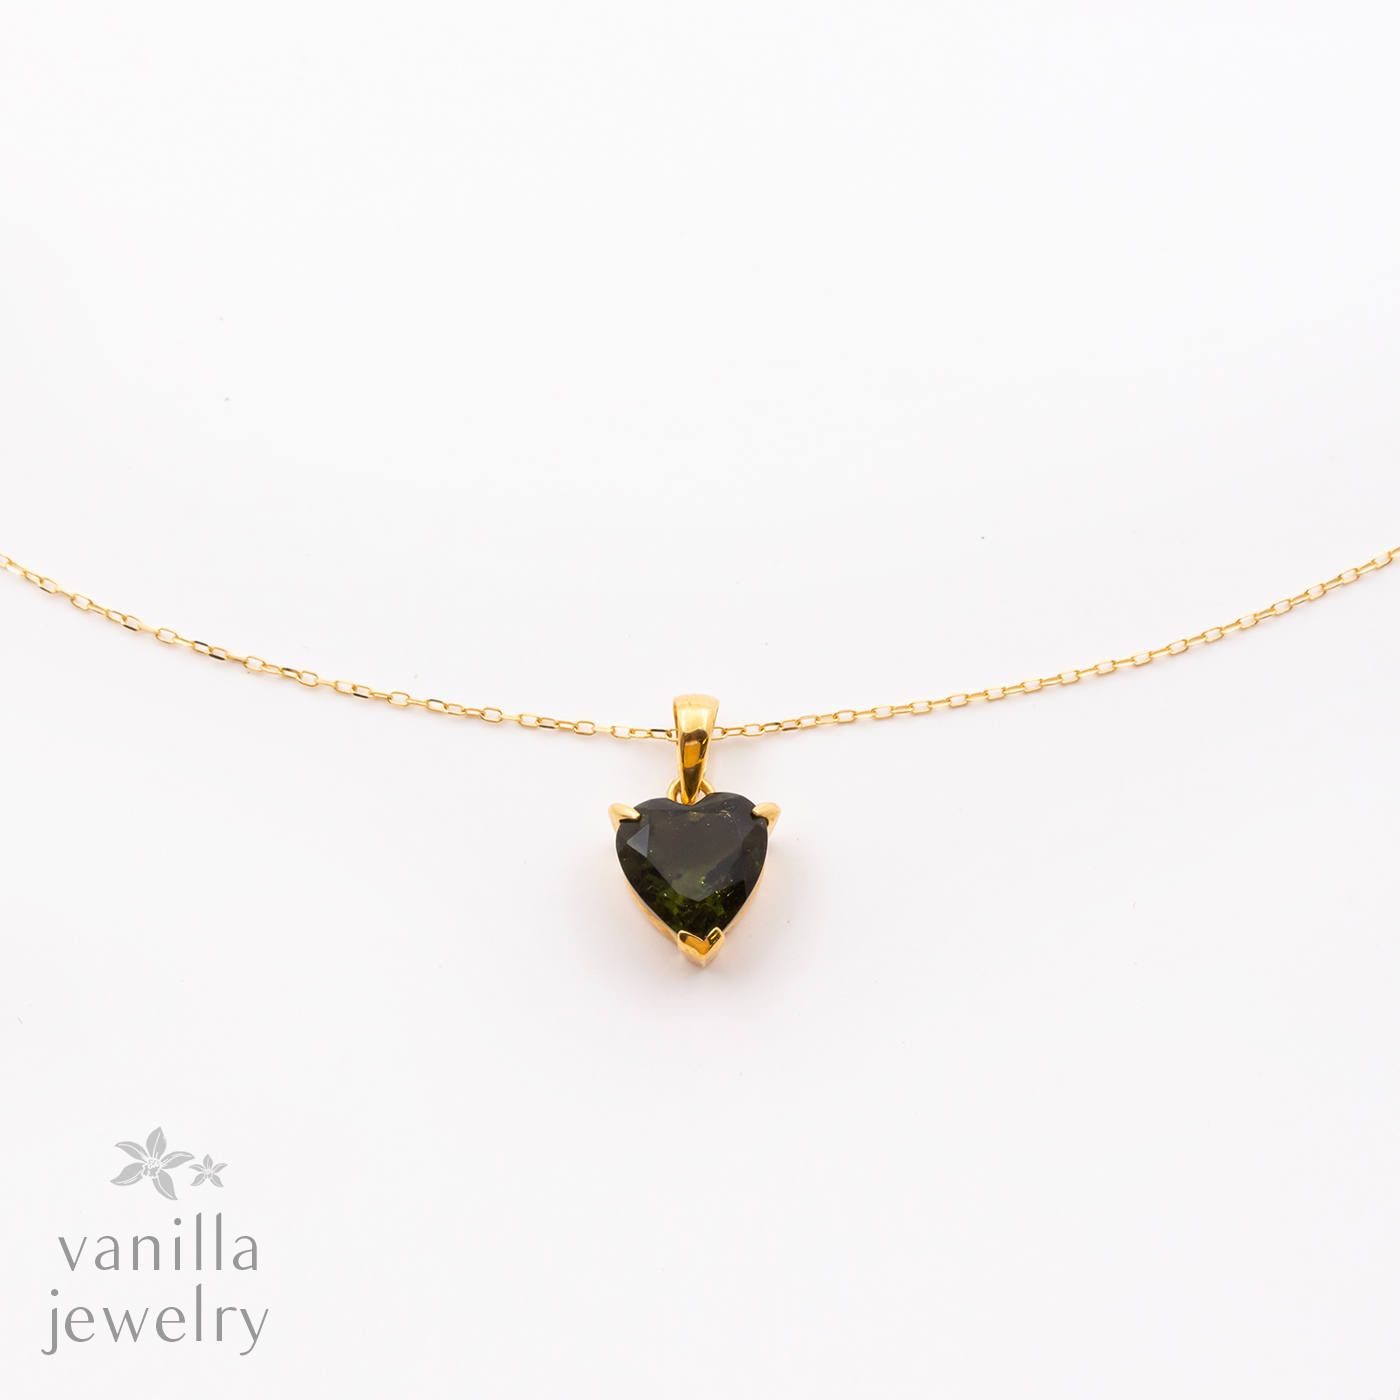 vanilla jewelry - Chelice(シェリス) / デザインネックレス | vanilla 